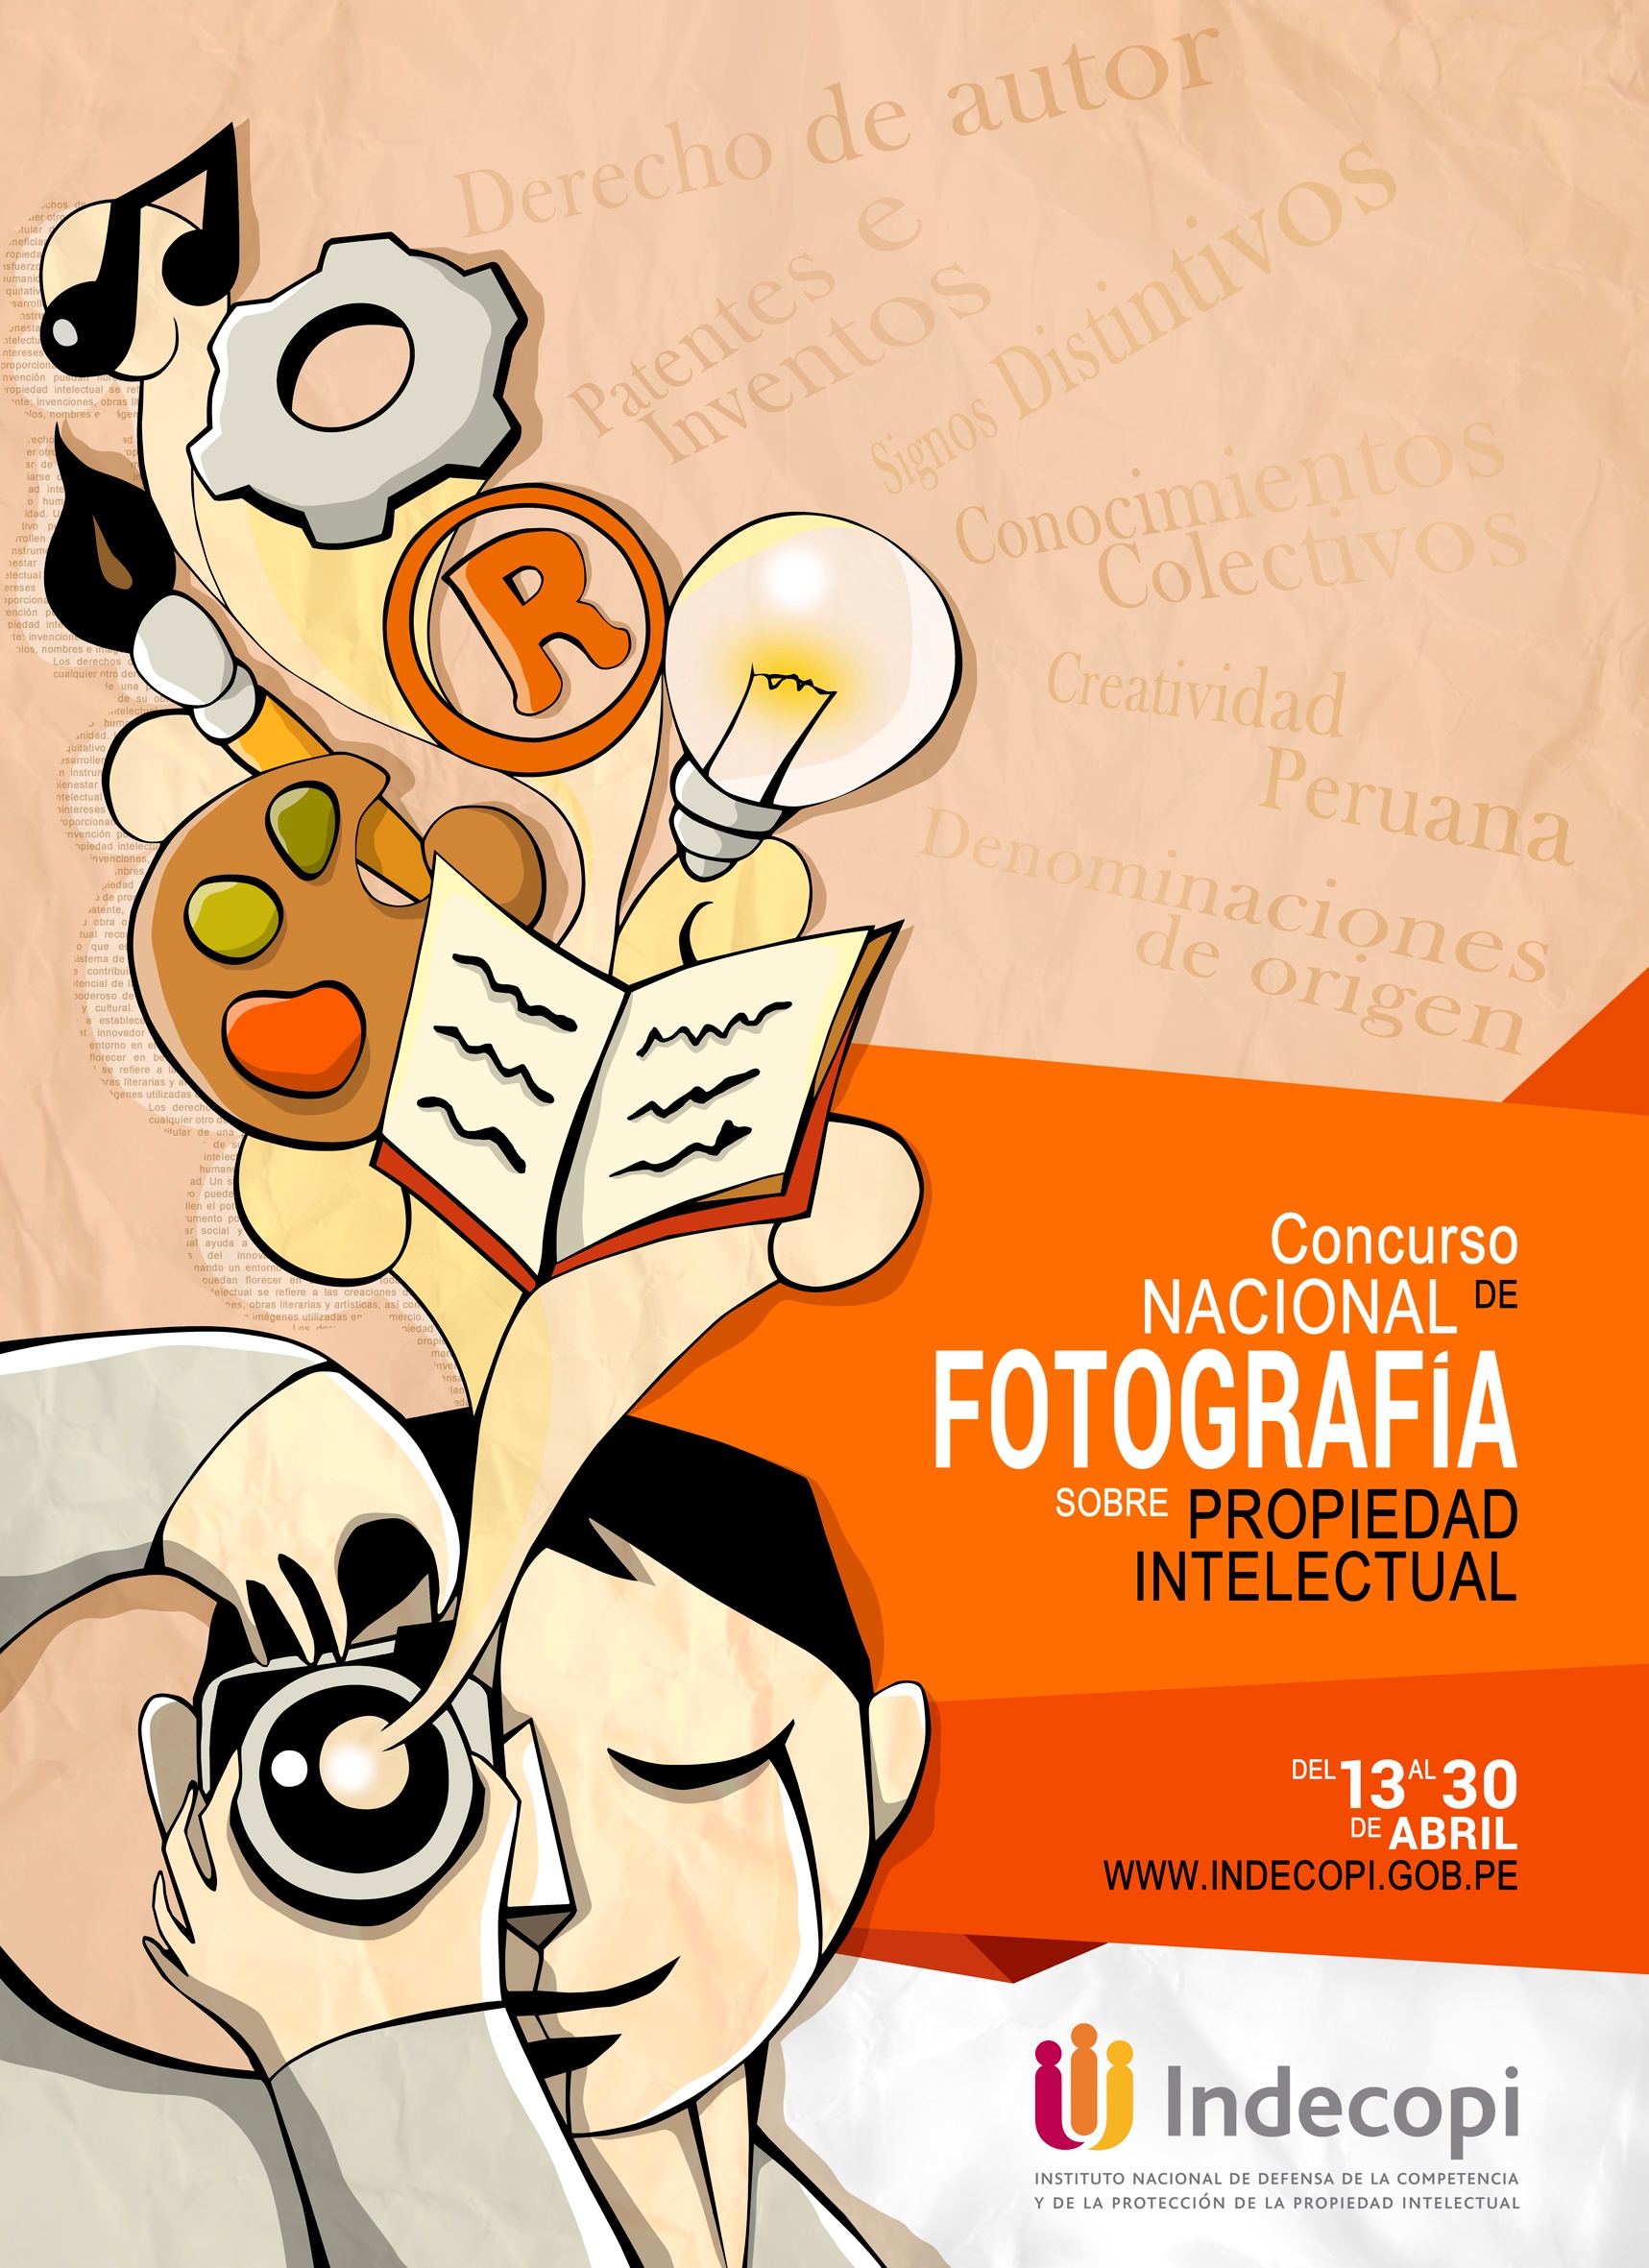 Indecopi lanza el "Concurso Ncional de Fotografía sobre Propiedad Ineletucal".